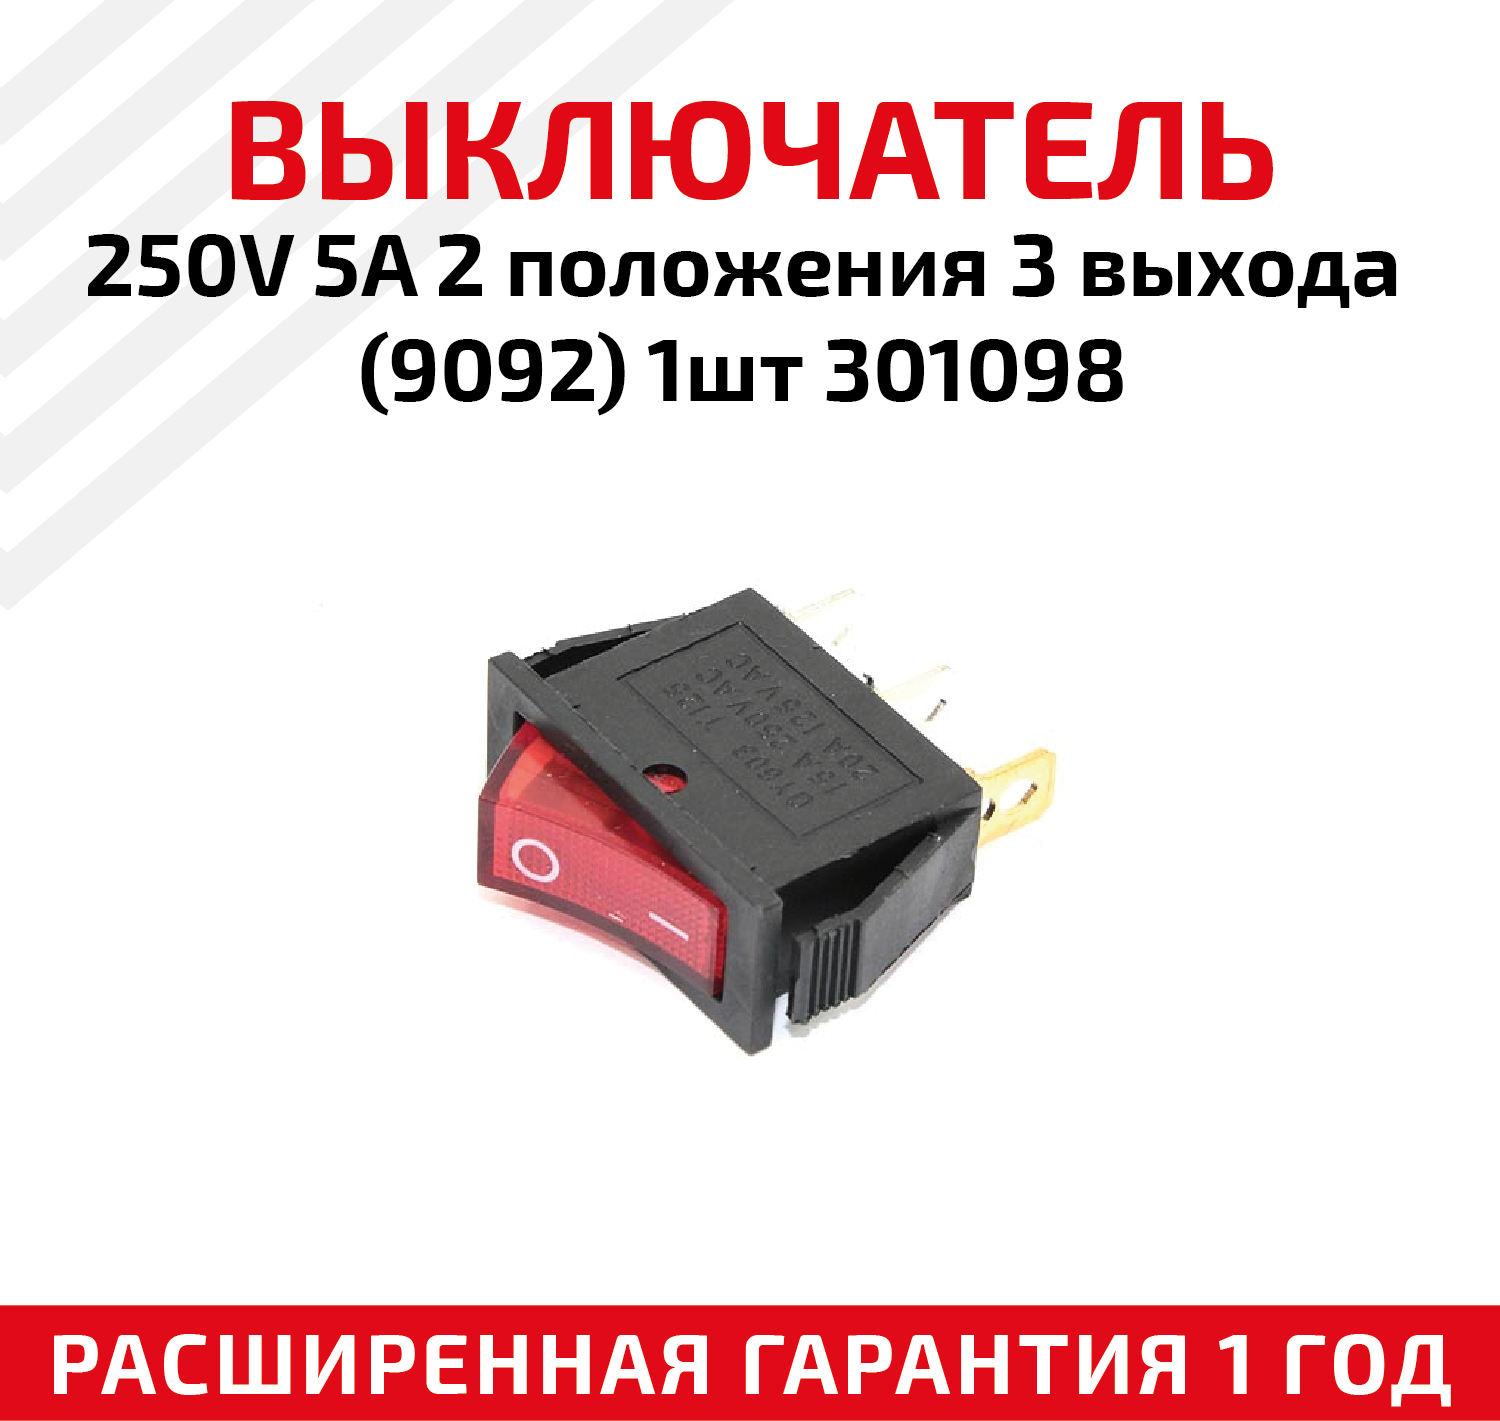 Выключатель для электроинструмента 250В, 5A, 2 положения 3 выхода (9092), 301098